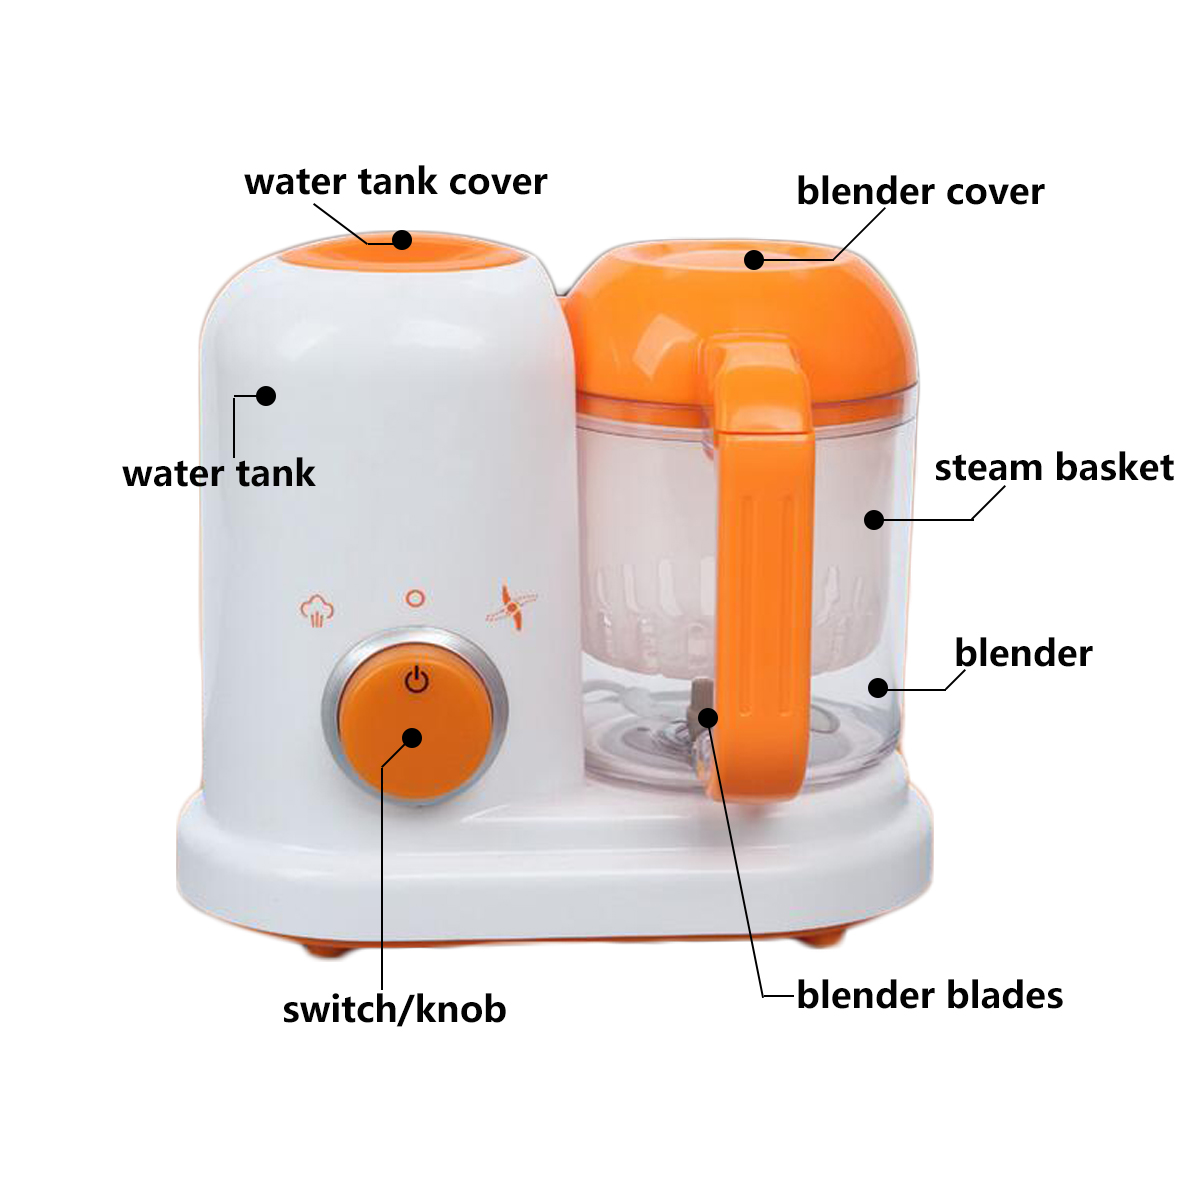 Electric-Baby-Food-Maker-Processor-Toddler-Blender-Safe-Healthy-Steamer-Processor-BPA-Free-1361401